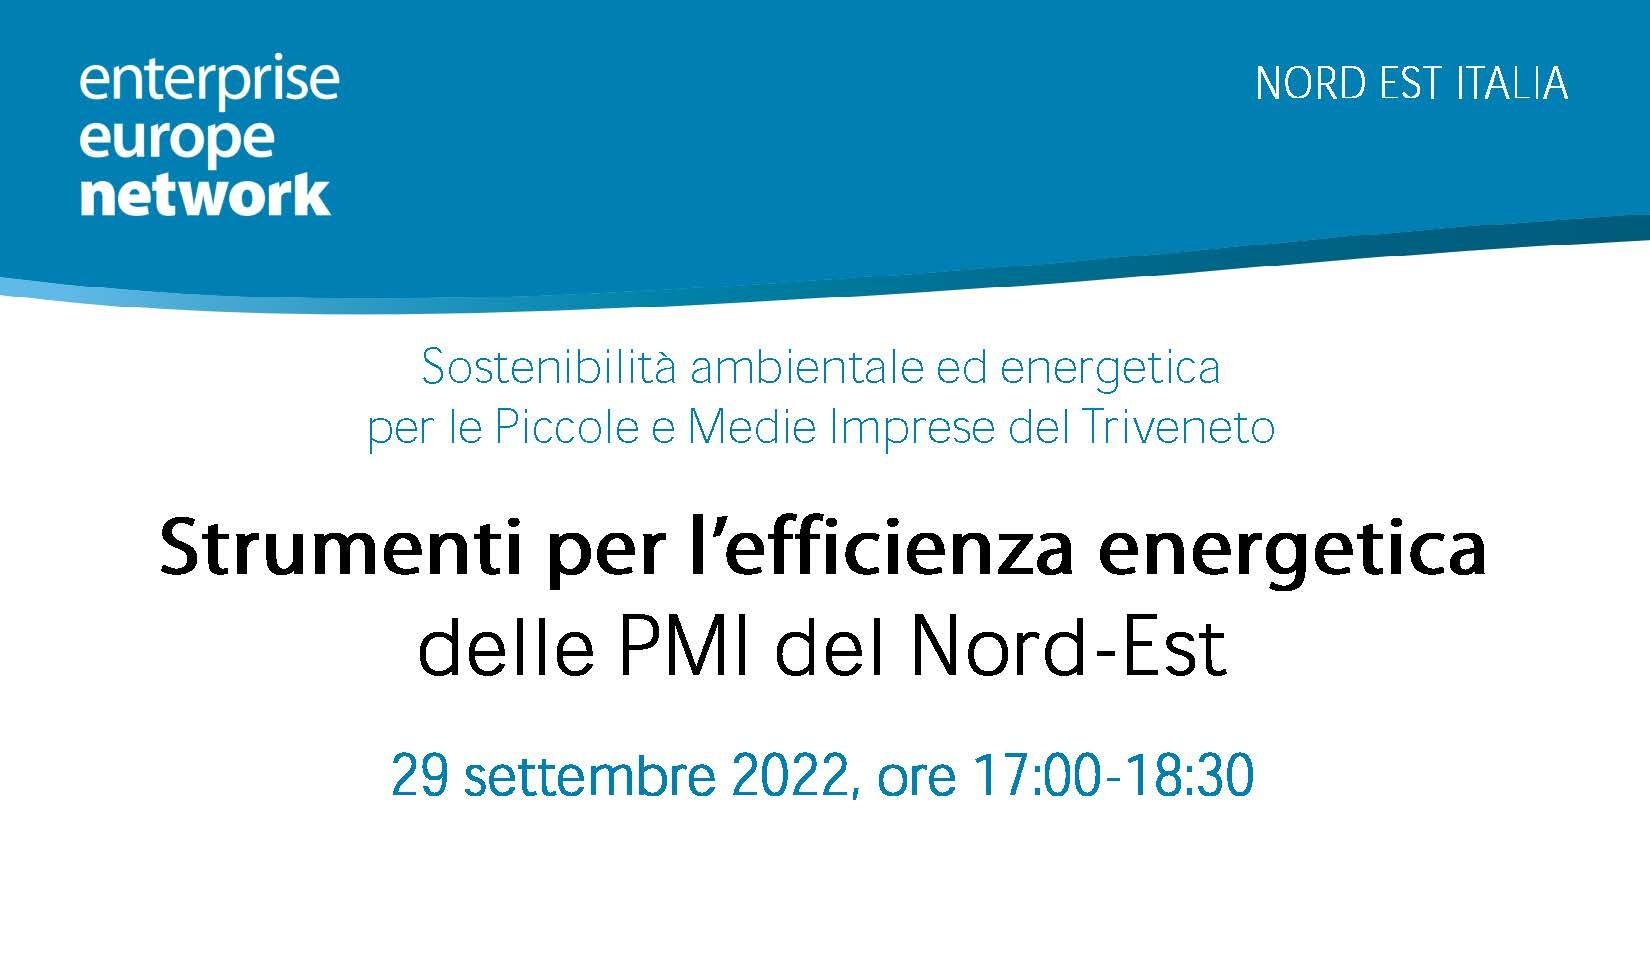 Locandina webinar 29/09/2022 ore 17:00-18:30 "Strumenti per l'efficienza energetica delle PMI del Nord-Est"